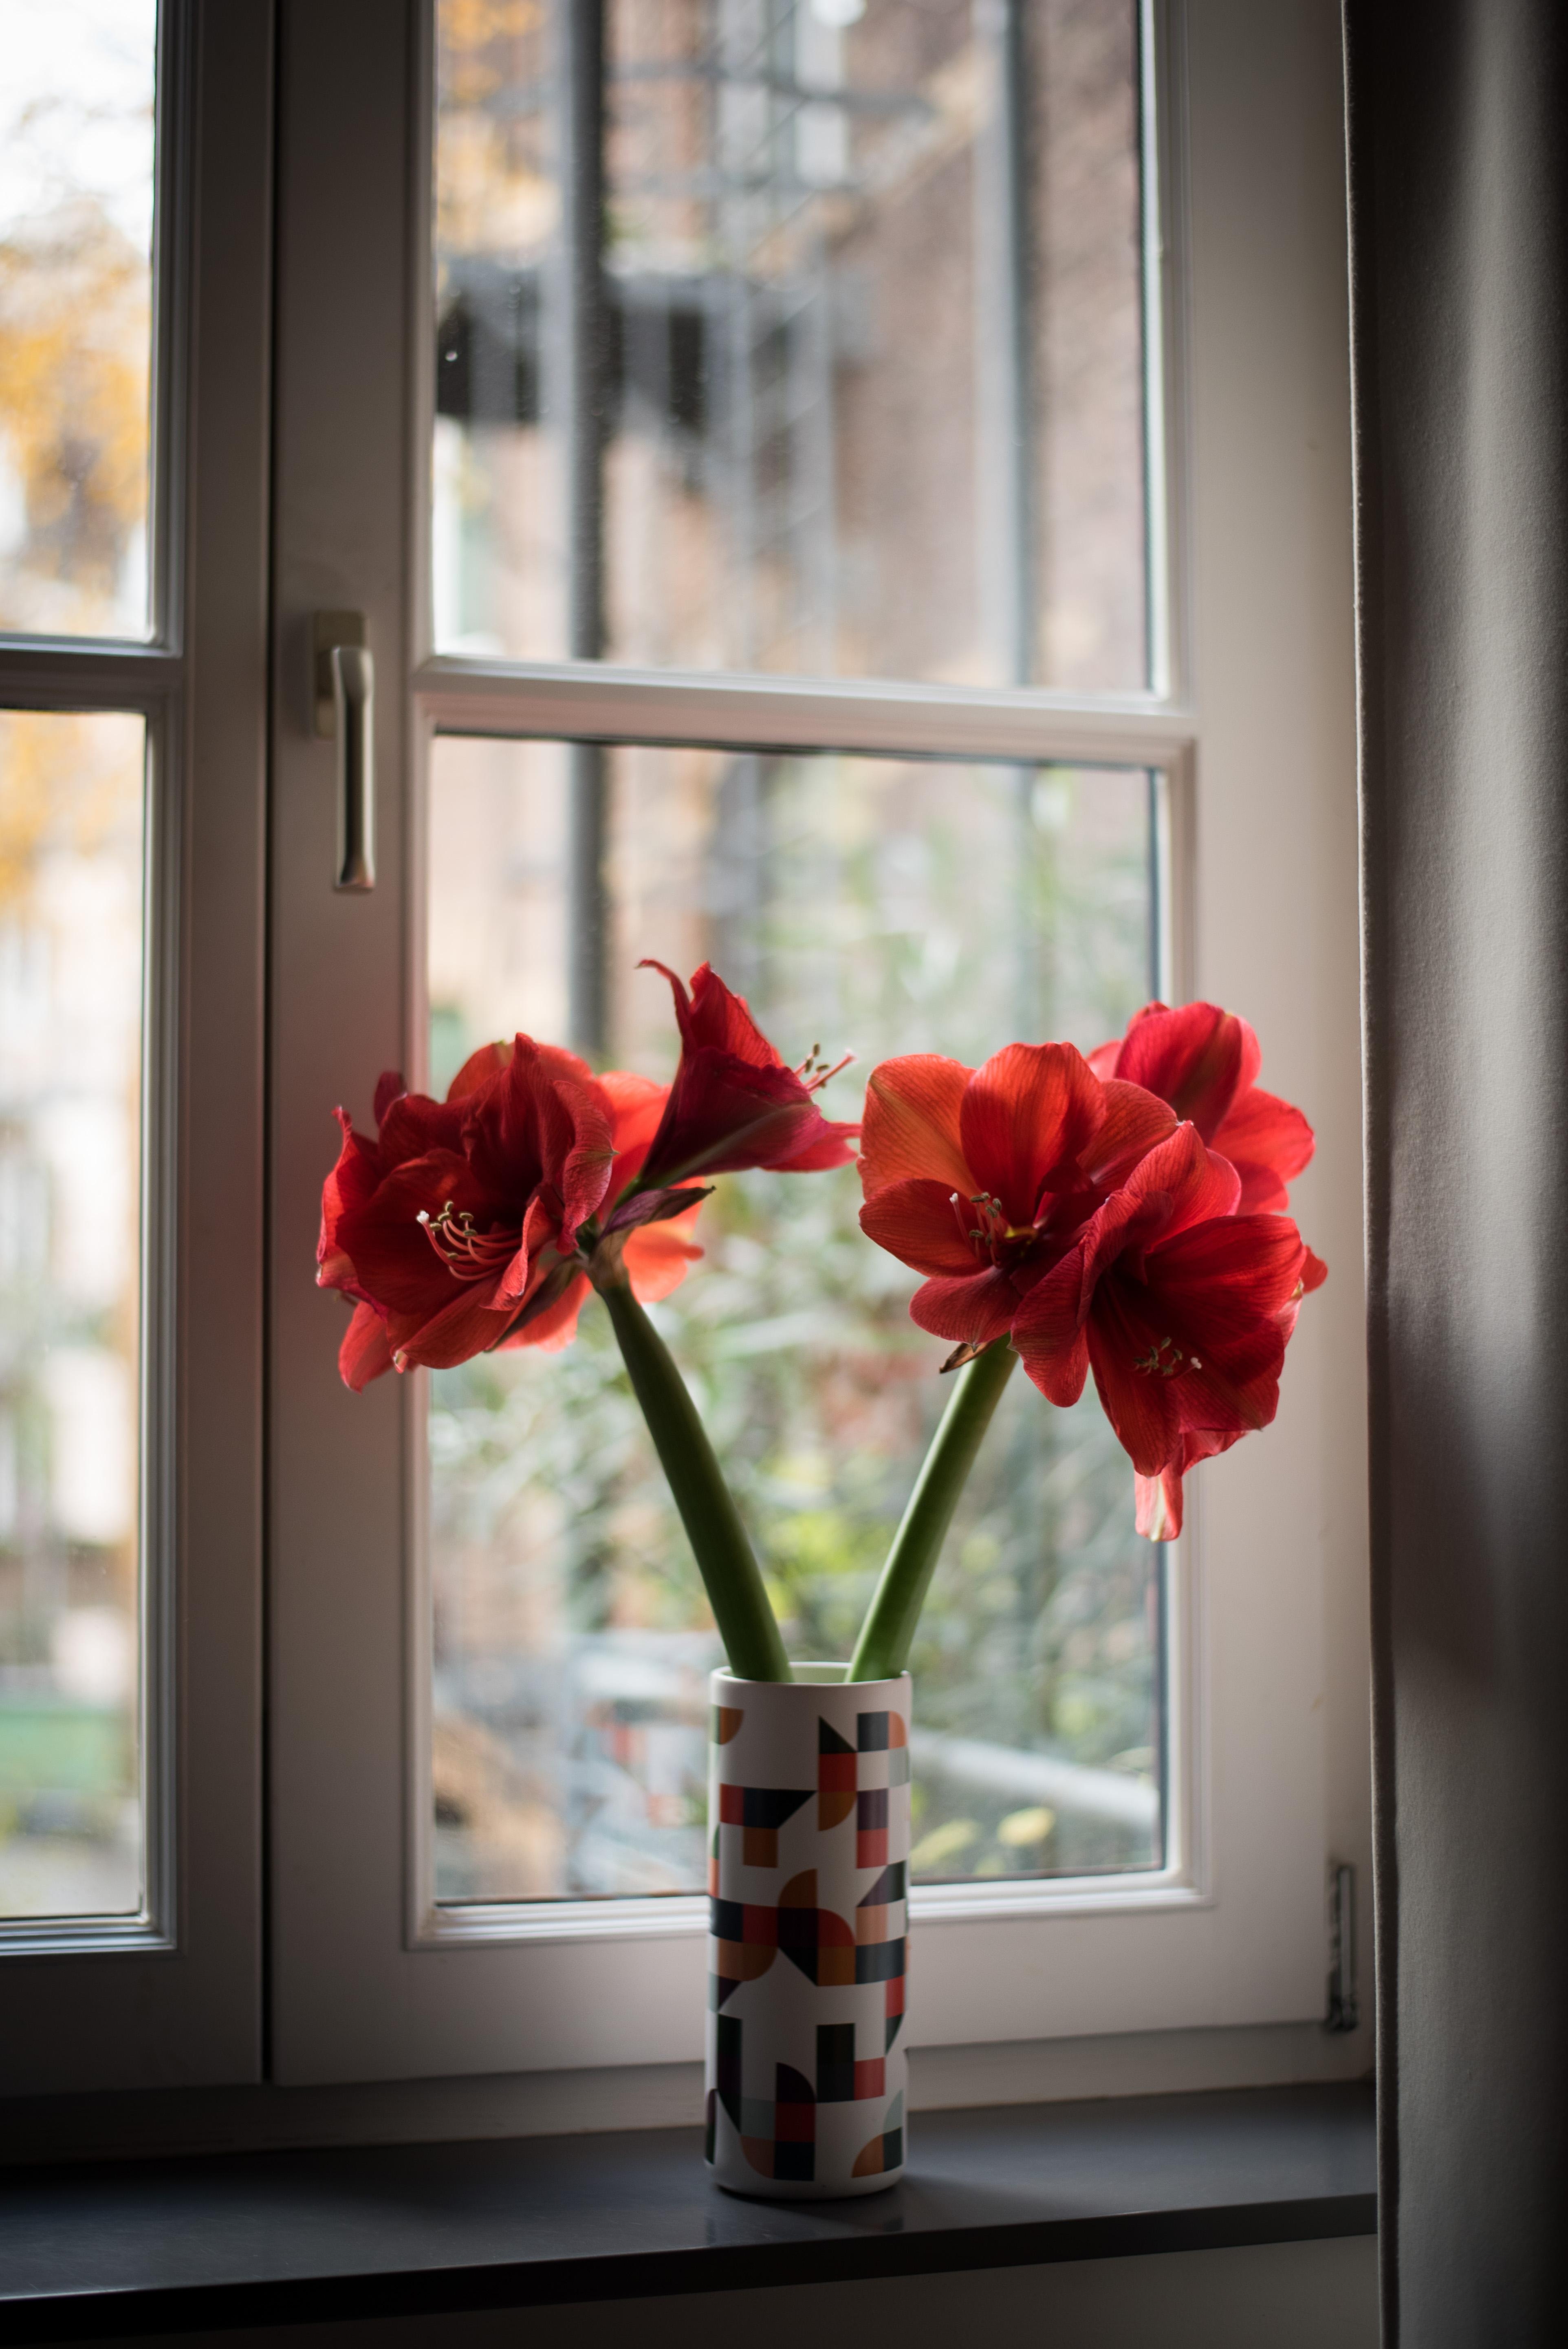 Schönen Vasenmittwoch!
#freshflowers #interior #interiorinspiration